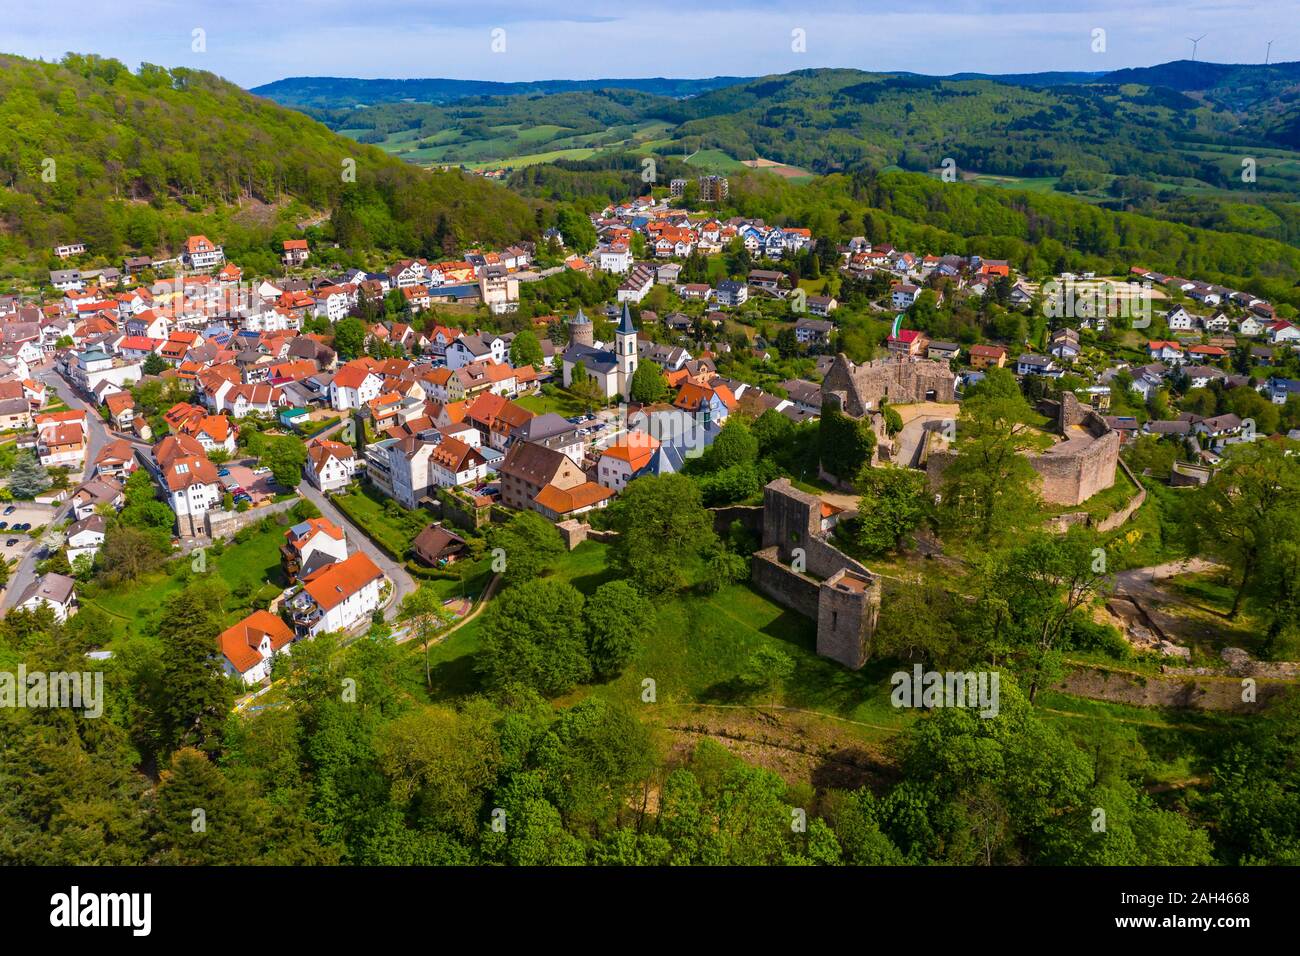 Alemania, Hesse, Lindenfels, vista aérea de la ciudad medieval, con las ruinas del castillo en el centro Foto de stock